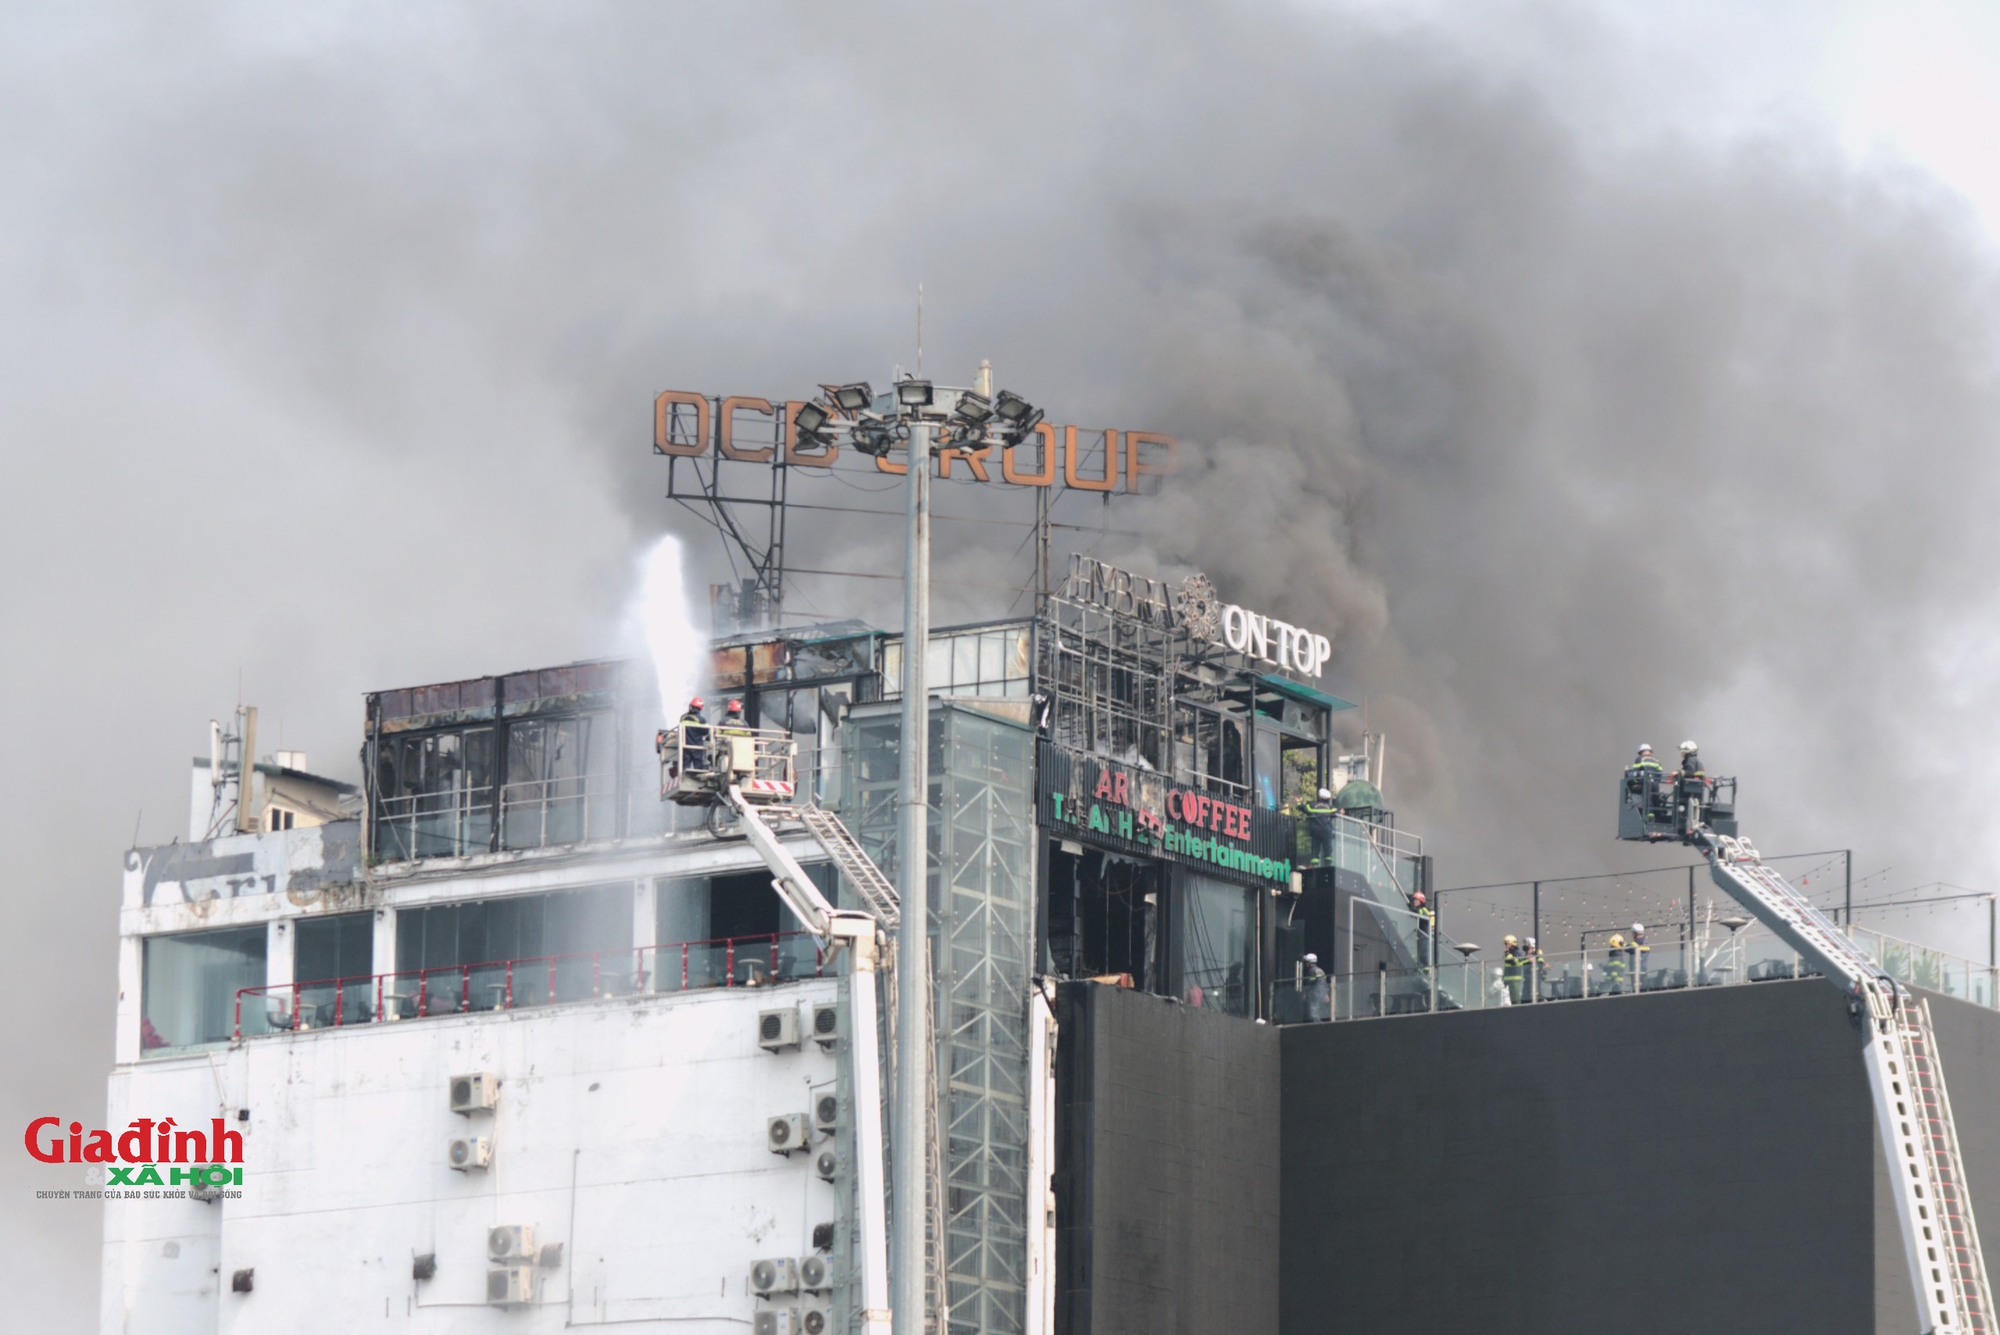 Hé lộ nguyên nhân cháy lớn tại tòa nhà 9 tầng tại ngã 5 nổi tiếng Hà Nội- Ảnh 7.